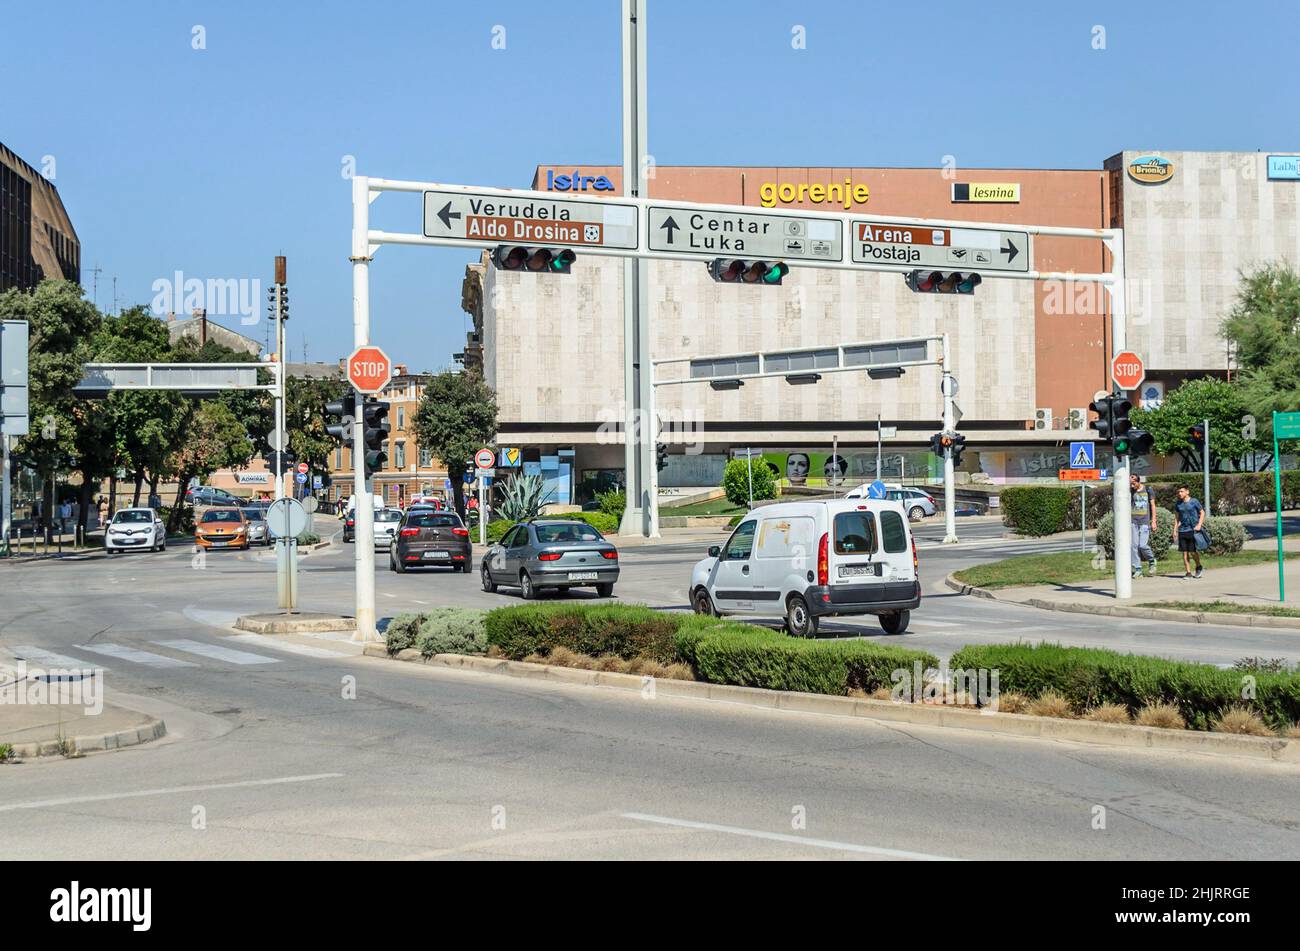 Strade nel centro di Pula. Veicoli in movimento, semafori e segnaletica direzionale in un giorno di sole. Giorno ordinario nella vita quotidiana. Foto Stock